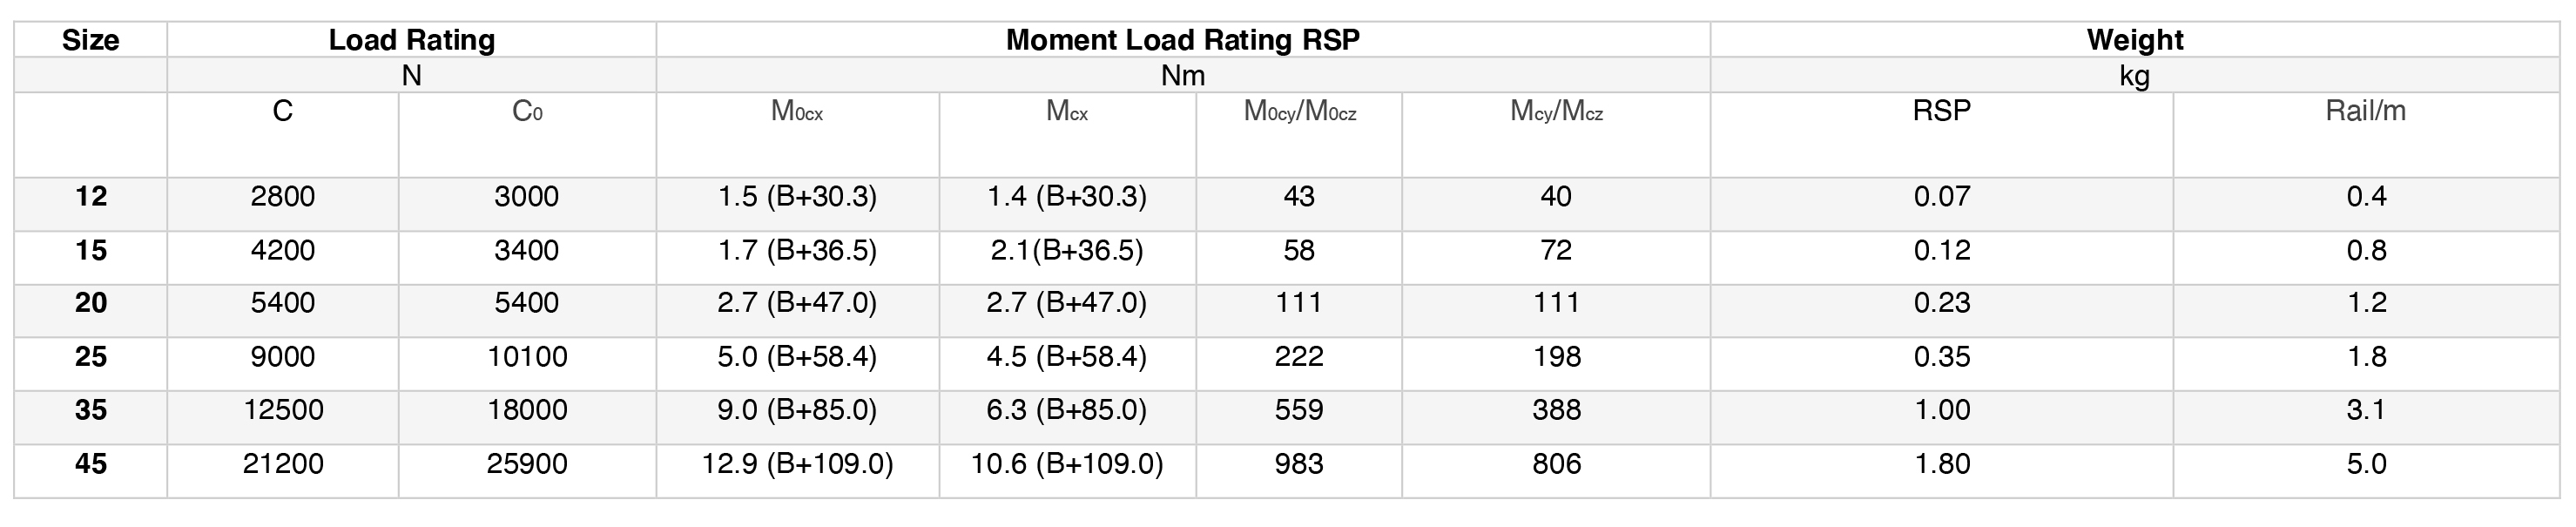 FDA Standard Load Ratings